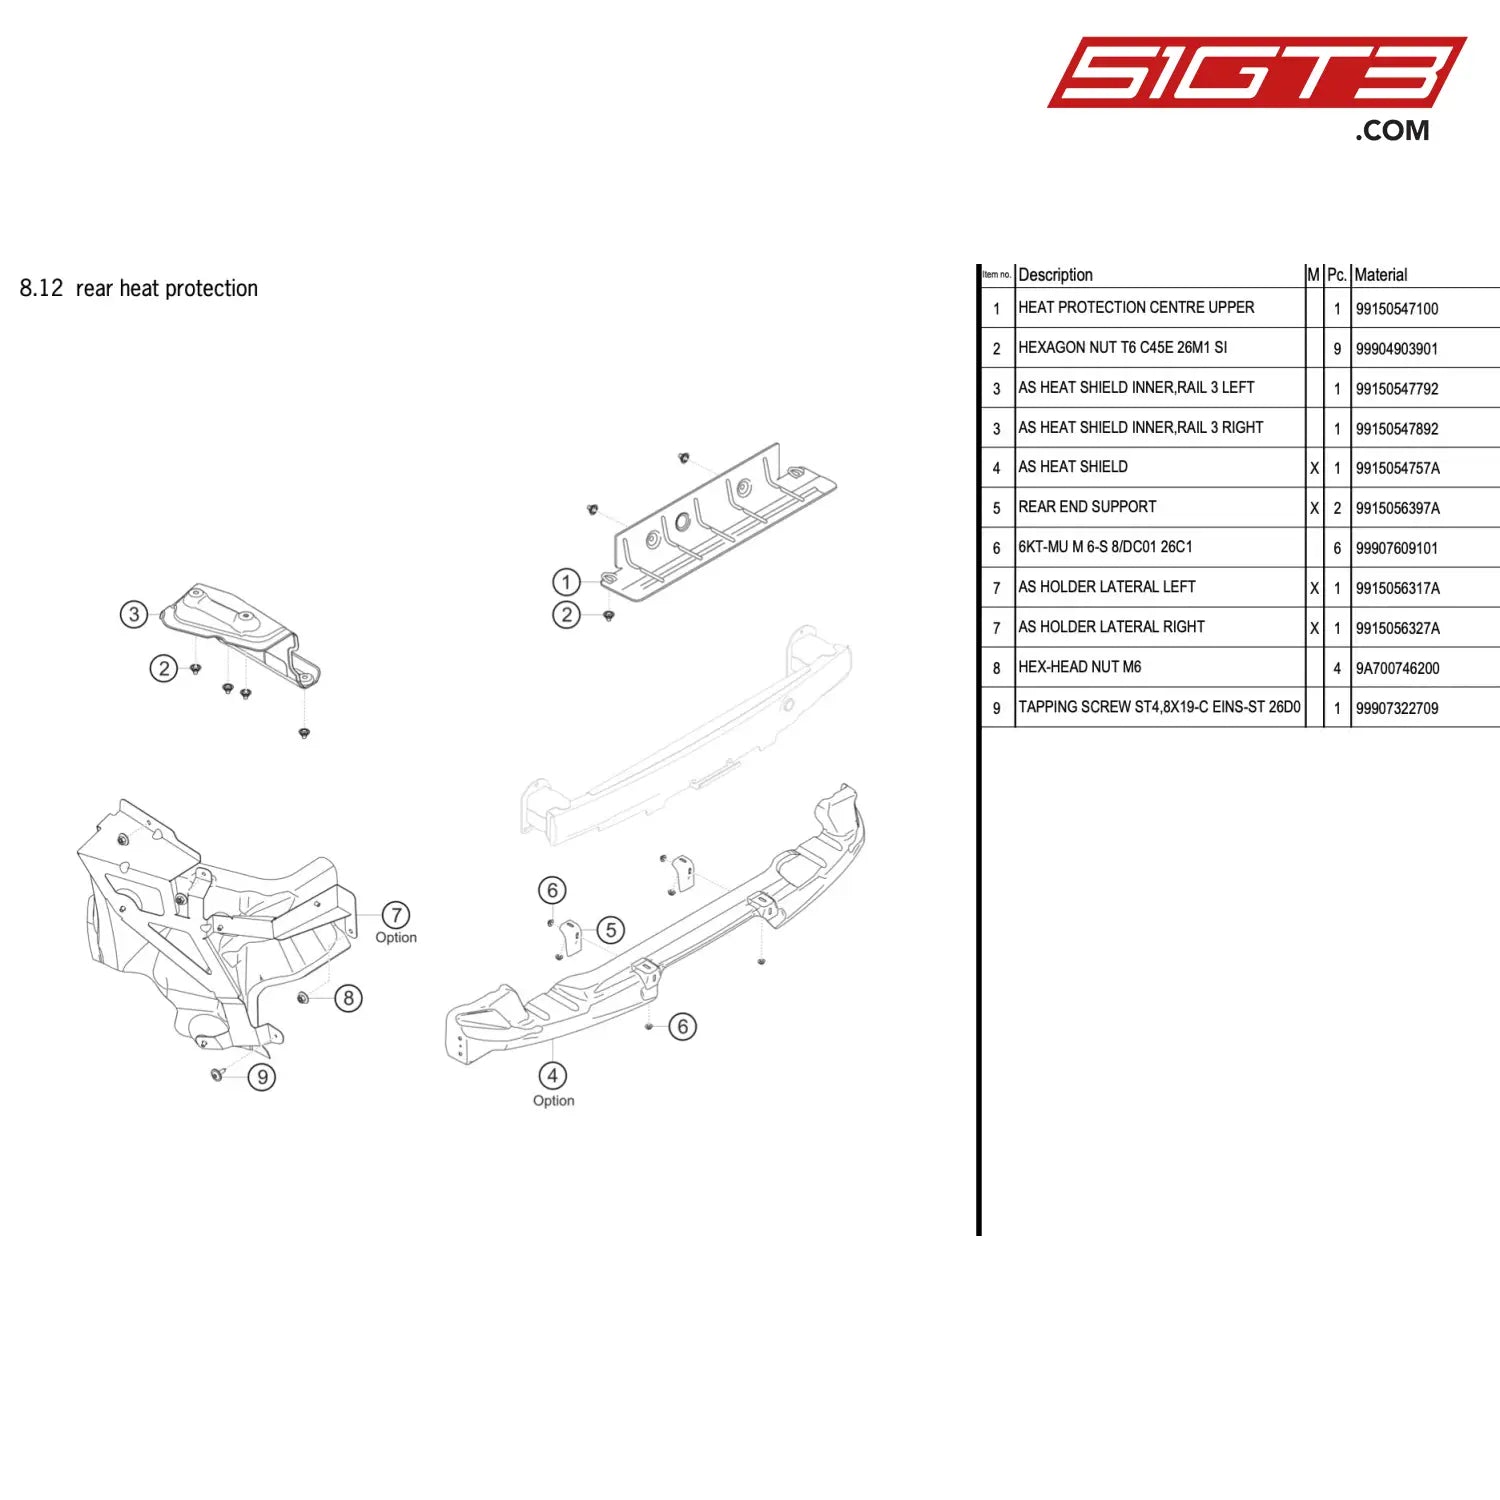 As Heat Shield Inner Rail 3 Left - 99150547792 [Porsche 911 Gt3 R Type 991 (Gen 2)] Rear Heat